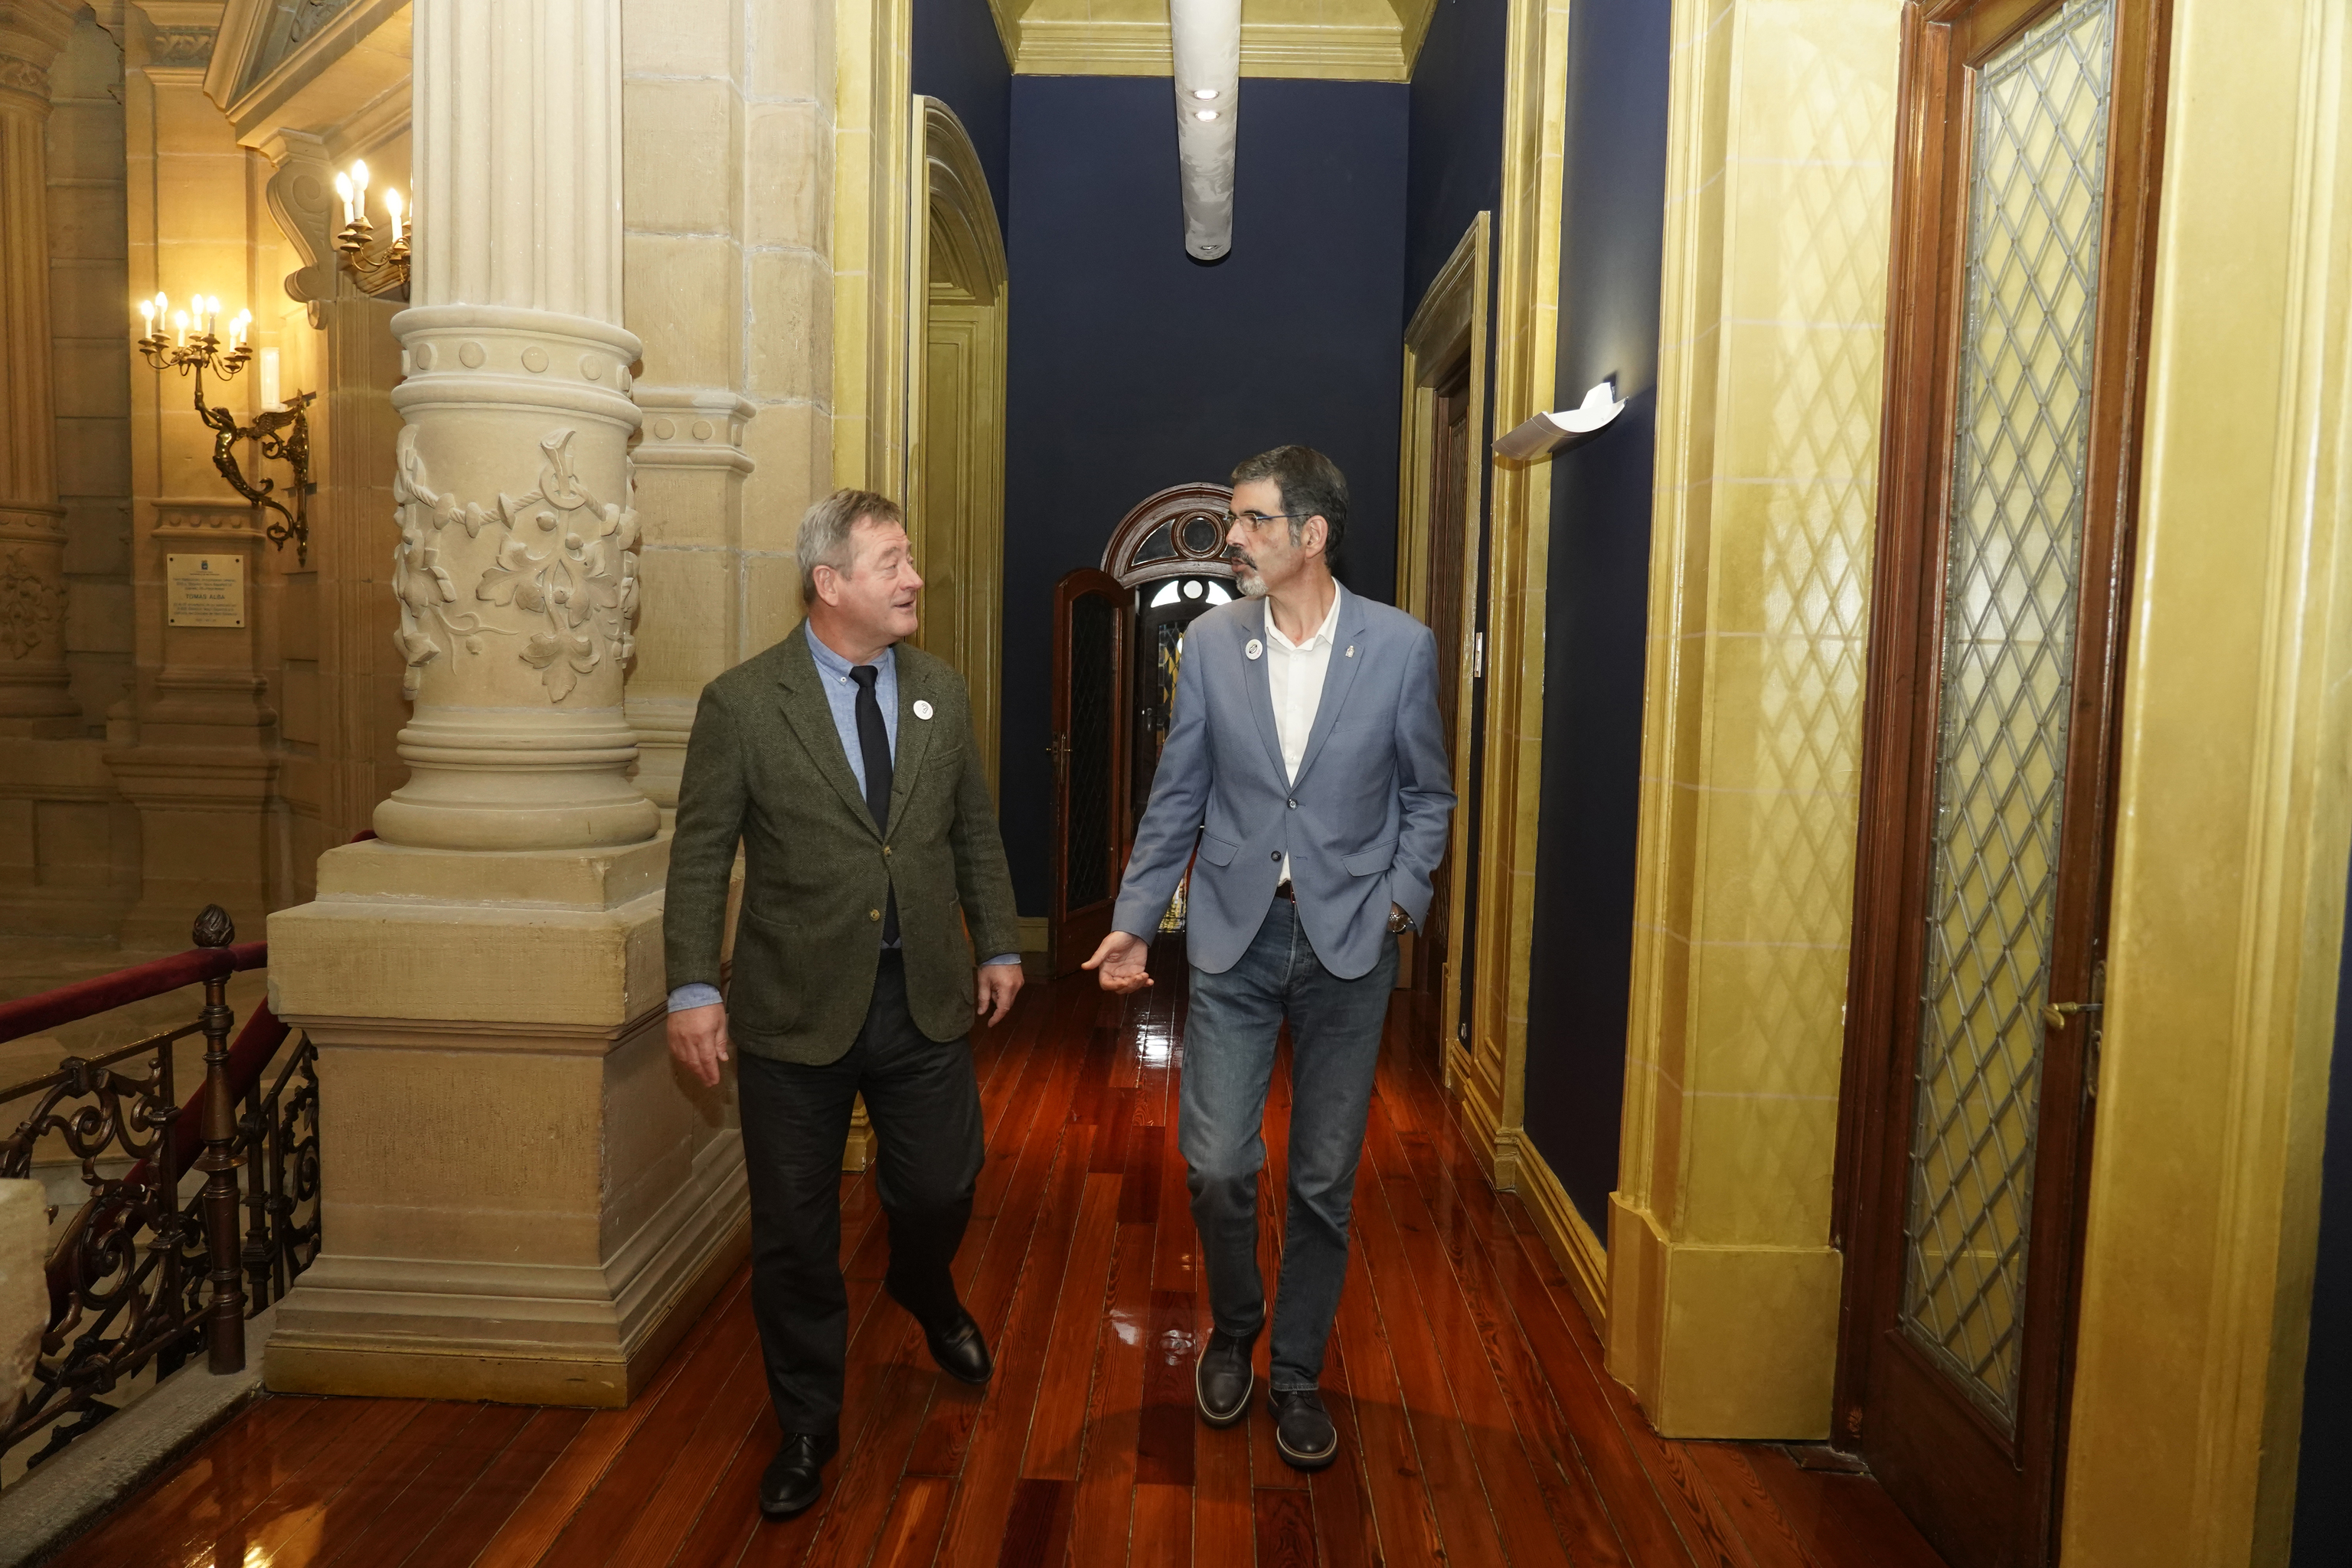 El portavoz del Gobierno vasco Bingen Zupiria y el alcalde de Donostia Eneko Goia durante un encuentro en el Consistorio.